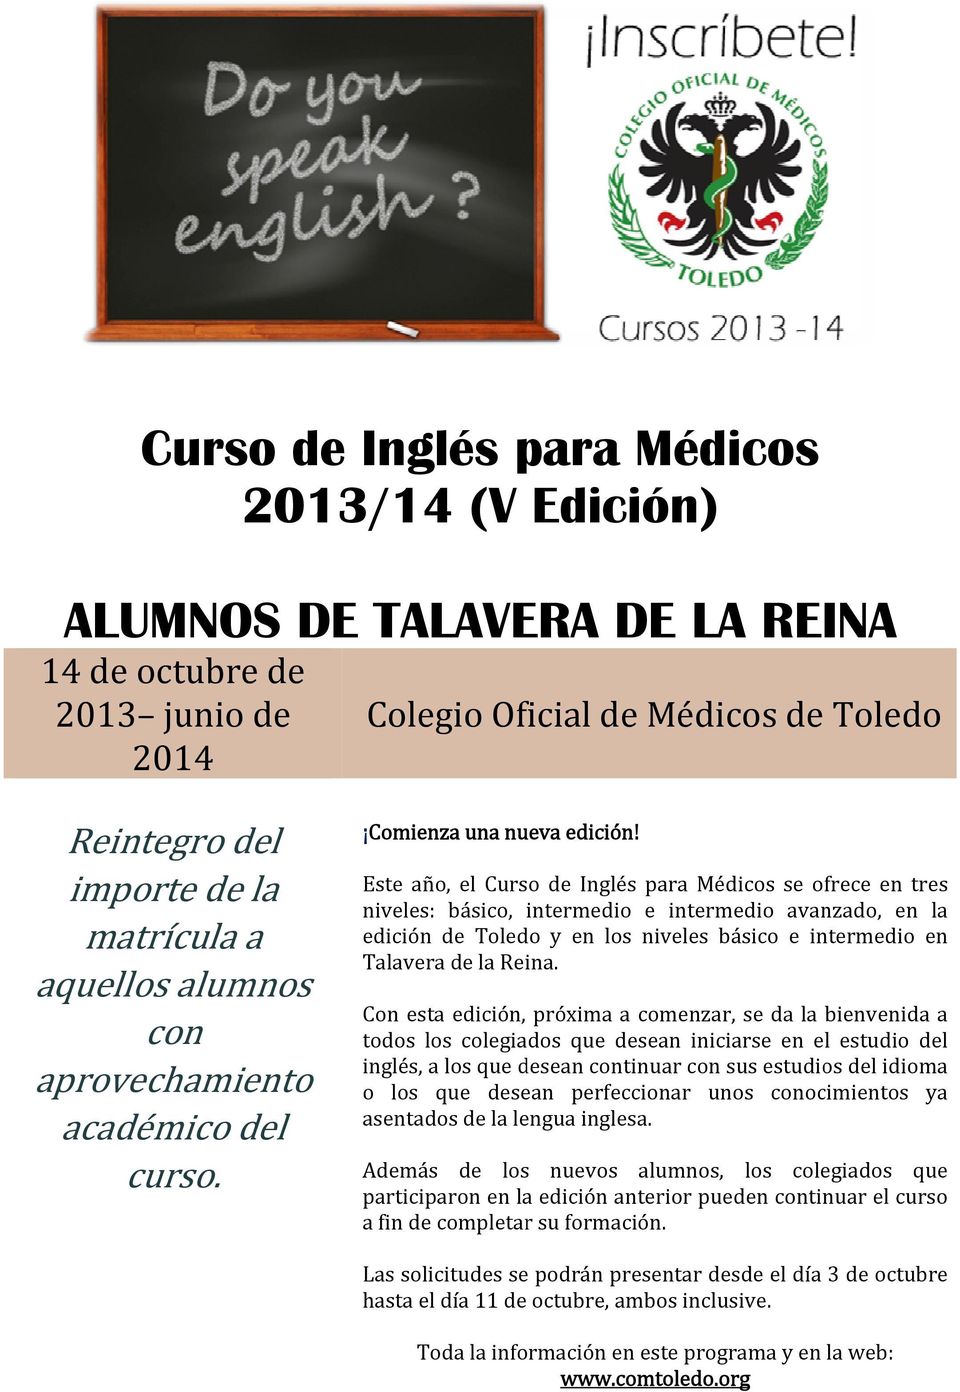 Este año, el Curso de Inglés para Médicos se ofrece en tres niveles: básico, intermedio e intermedio avanzado, en la edición de Toledo y en los niveles básico e intermedio en Talavera de la Reina.